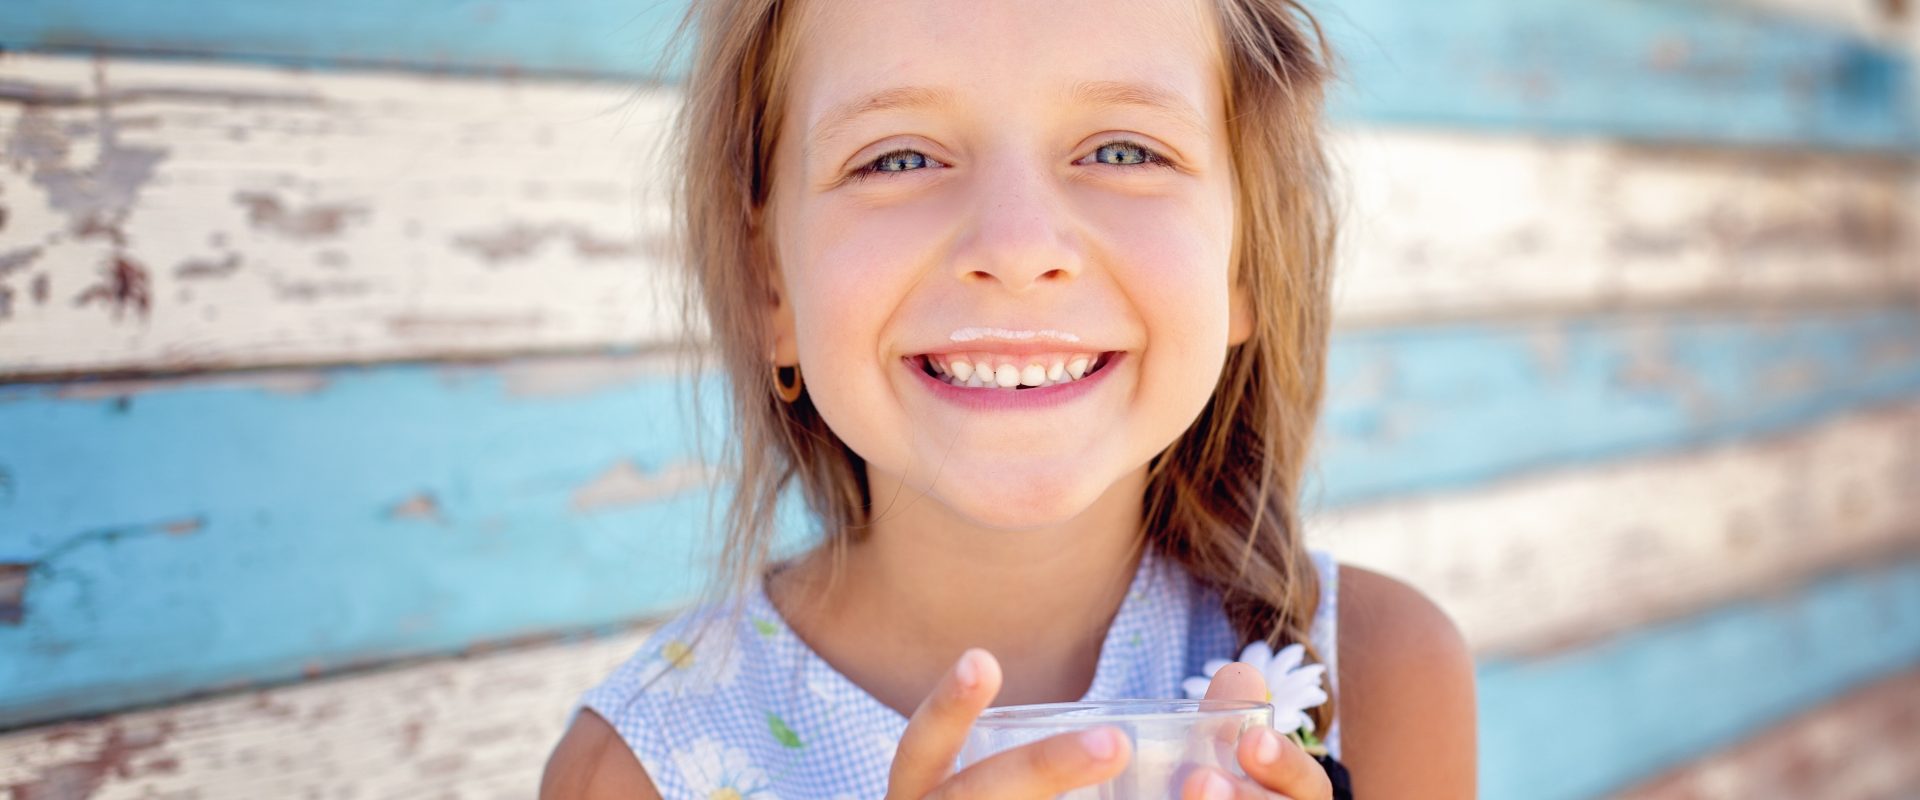 Mleko bez laktozy - pić czy nie pić? Co warto o nim wiedzieć? Uśmiechnięta dziewczynka z wąsami od mleka trzyma w dłoniach szklankę z mlekiem.